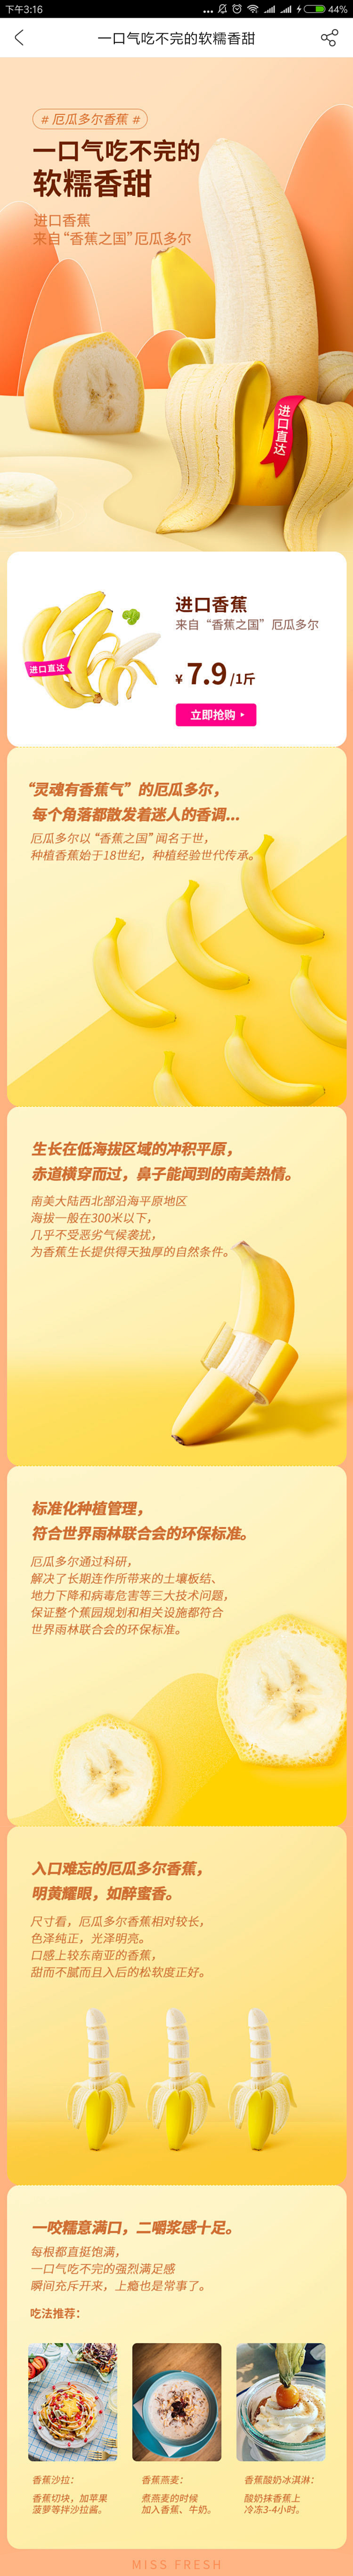 每日优鲜 香蕉专题